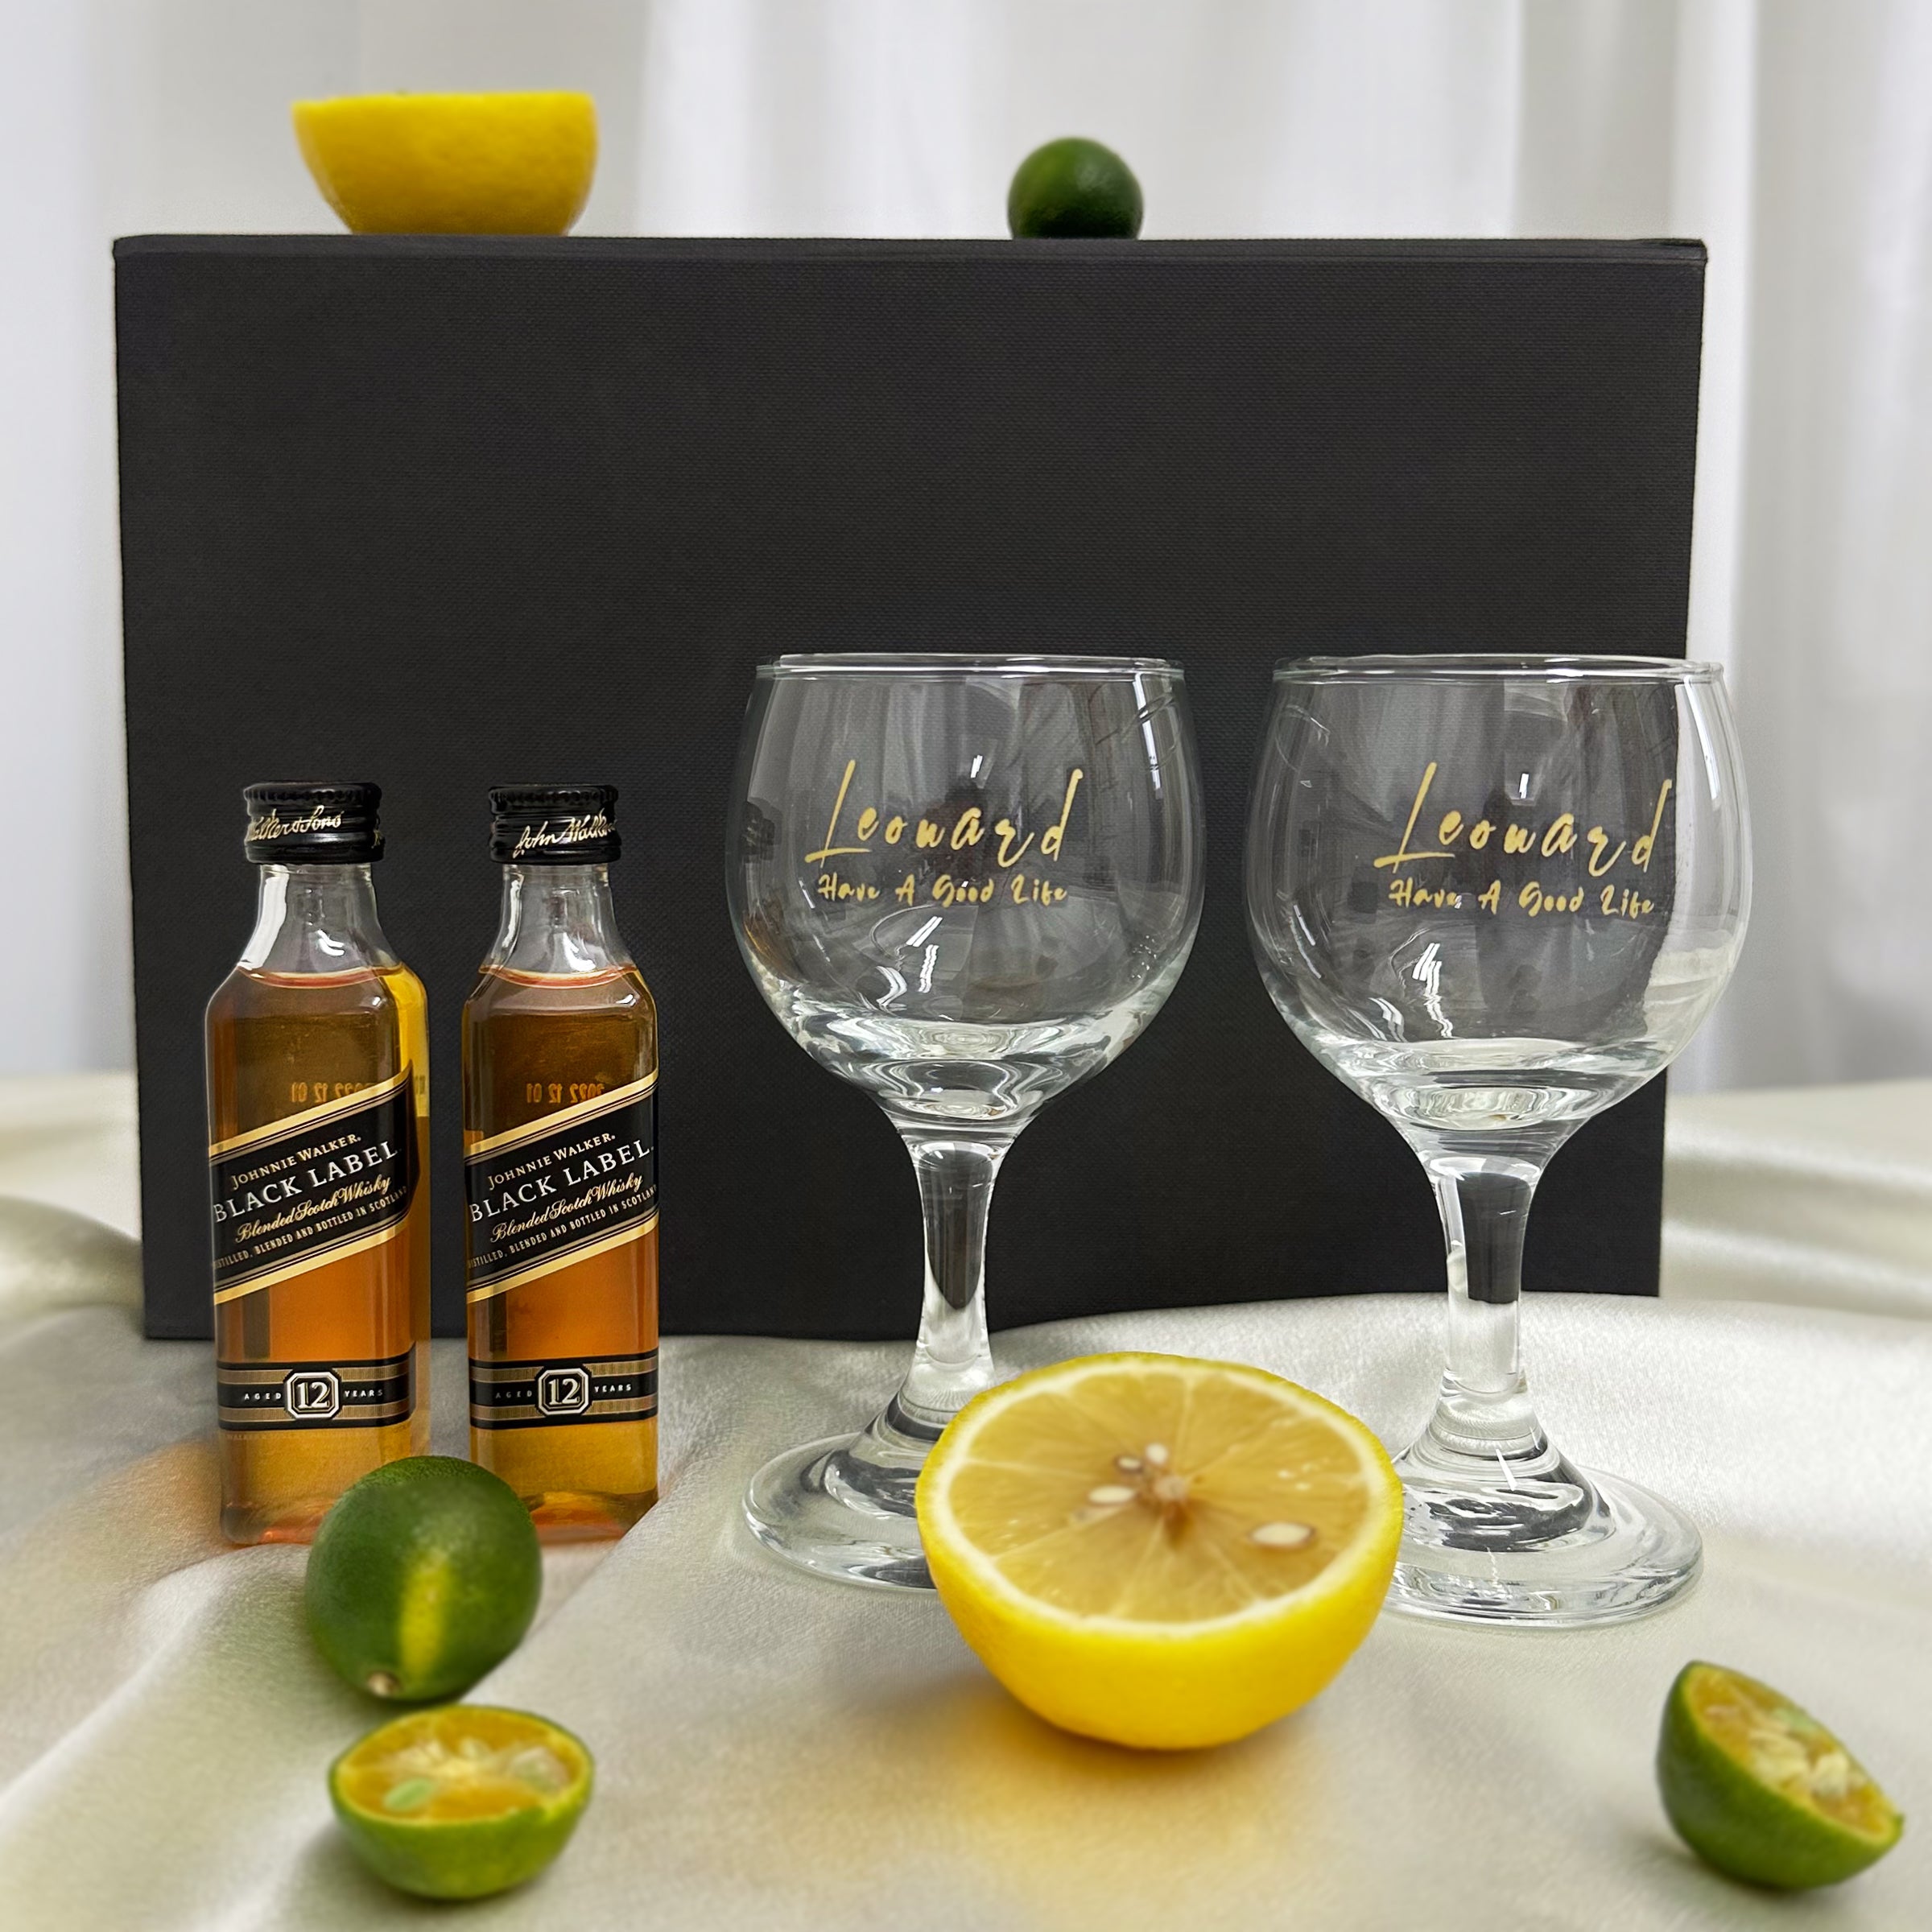 商務禮盒丨威士忌 人像雕刻 威士忌對杯  Mini Bottega Venetian禮盒 DY04-253 - Design Your Own Wine